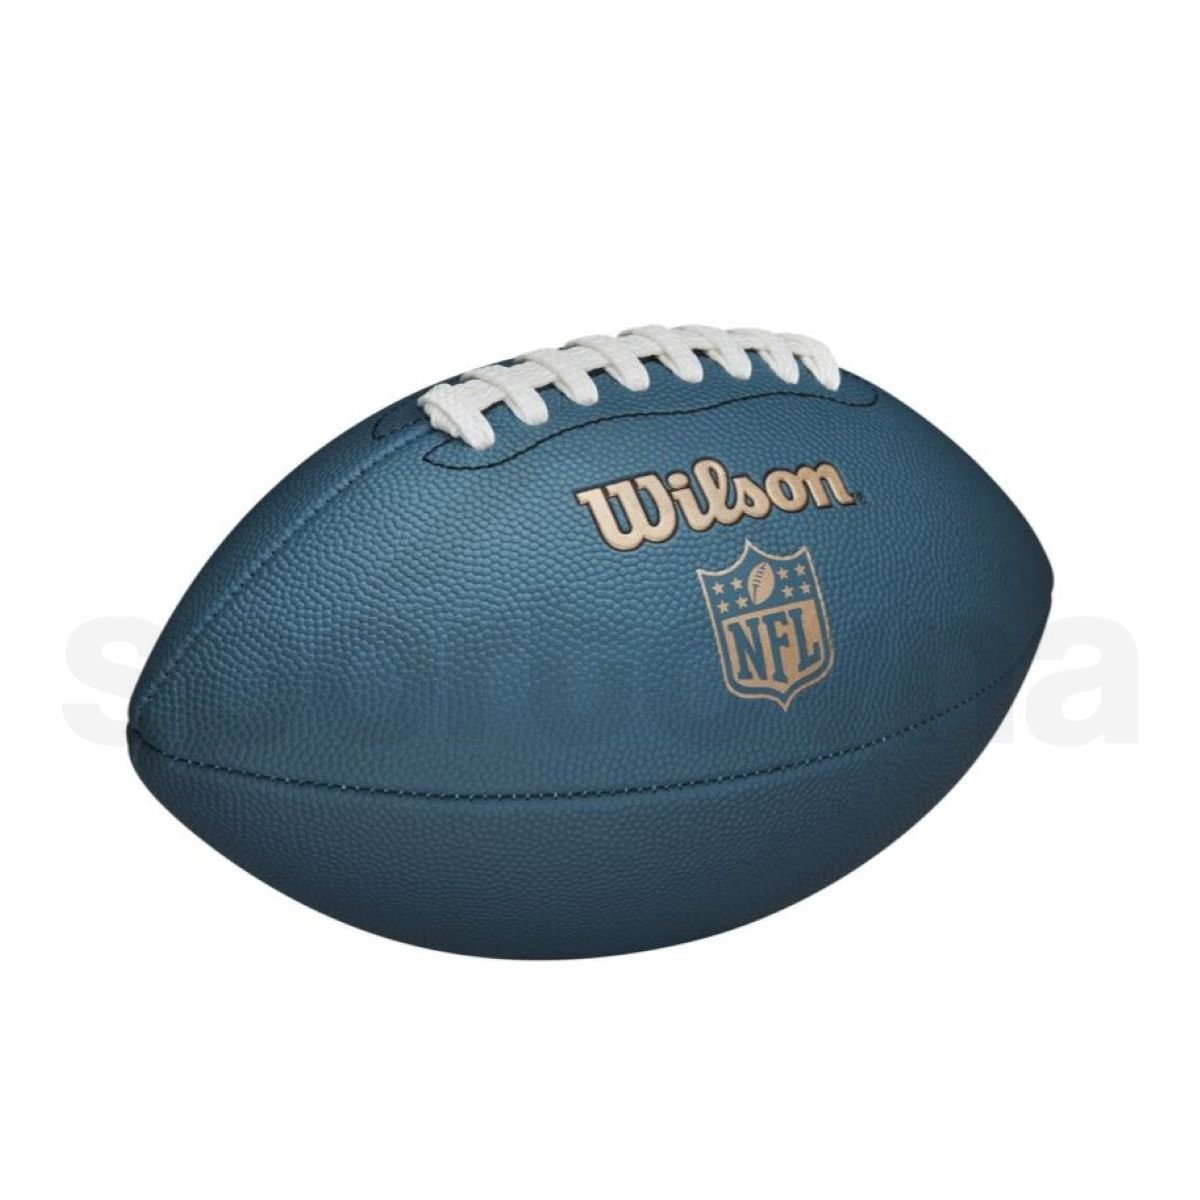 Míč Wilson NFL Ignition - modrá